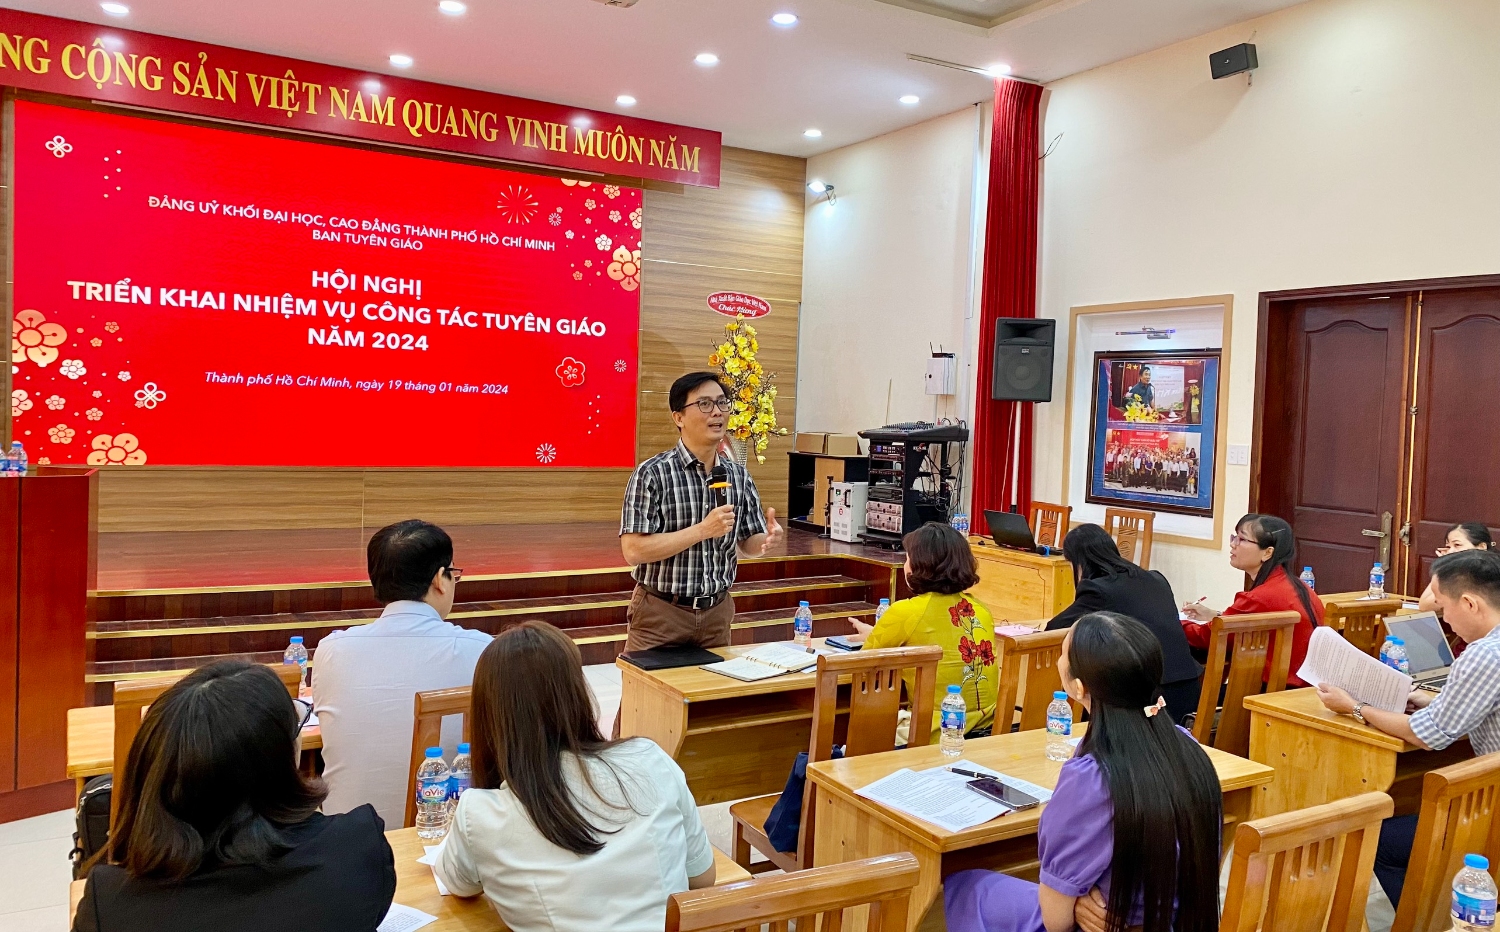 Đồng chí Vương Kiến Quốc – Phó phòng Tuyên truyền - nghiên cứu dư luận xã hội Ban Tuyên giáo Thành ủy phát biểu góp ý chương trình công tác tuyên giáo năm 2024